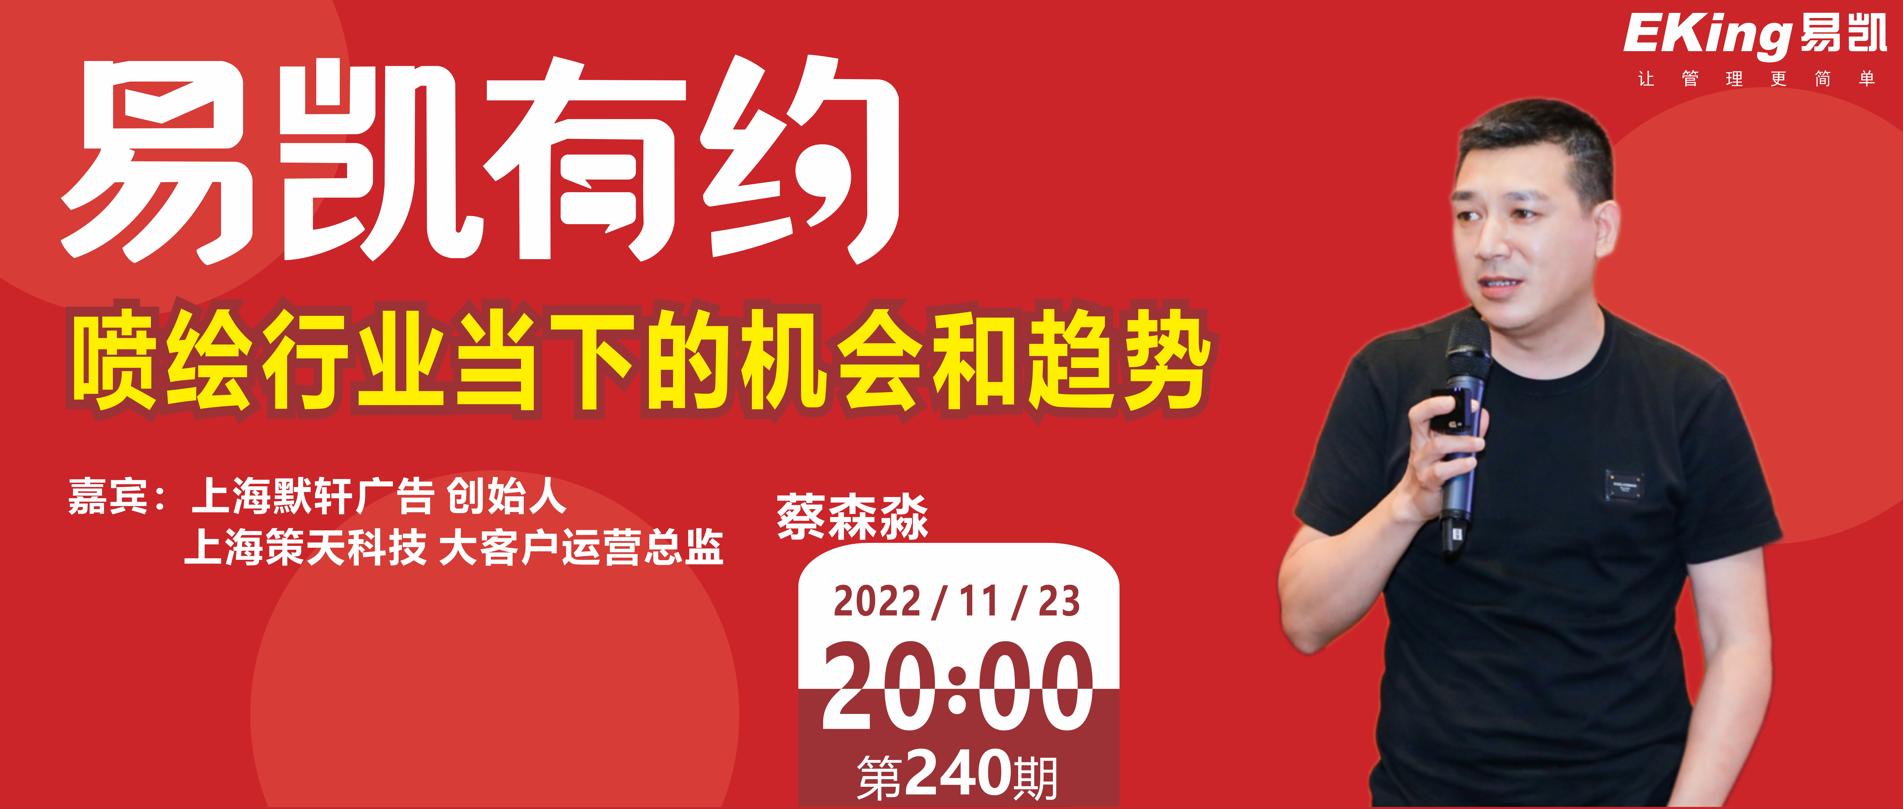 喷绘行业当下的机会和趋势--上海默轩广告创始人、上海策天科技大客户运营总